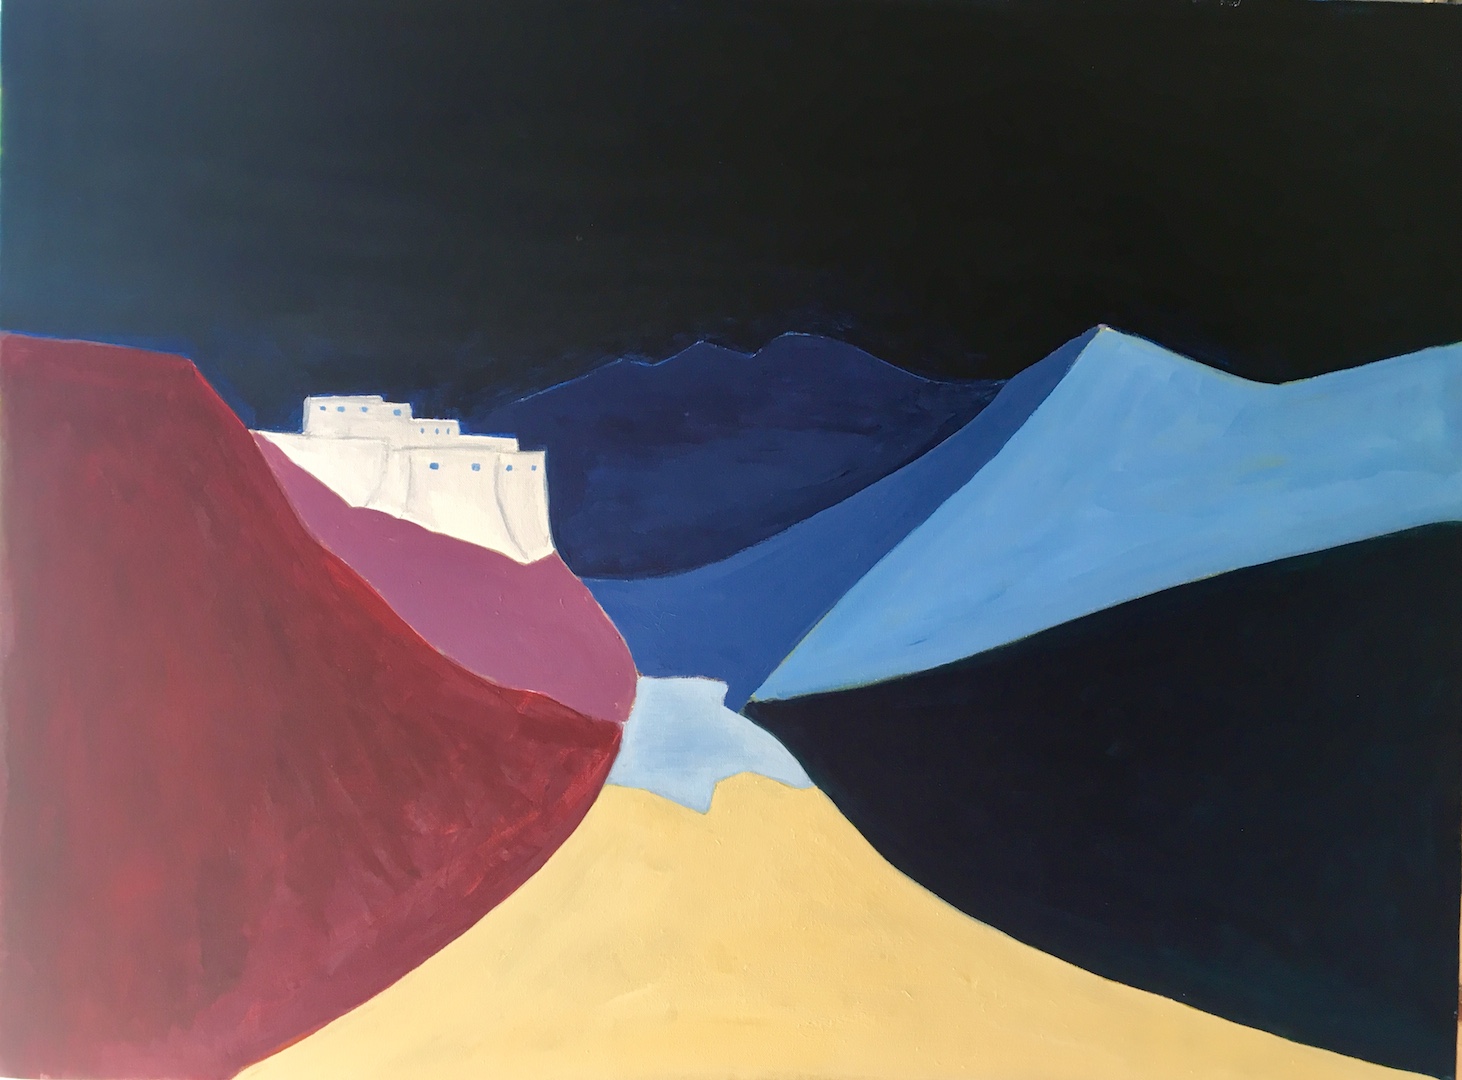 "Ladakh, songe d’un monastère sur sa vallée", par Michel Testard – Acrylique sur toile 150 x 75 cm - 2018. (Copyright : Michel Testard)